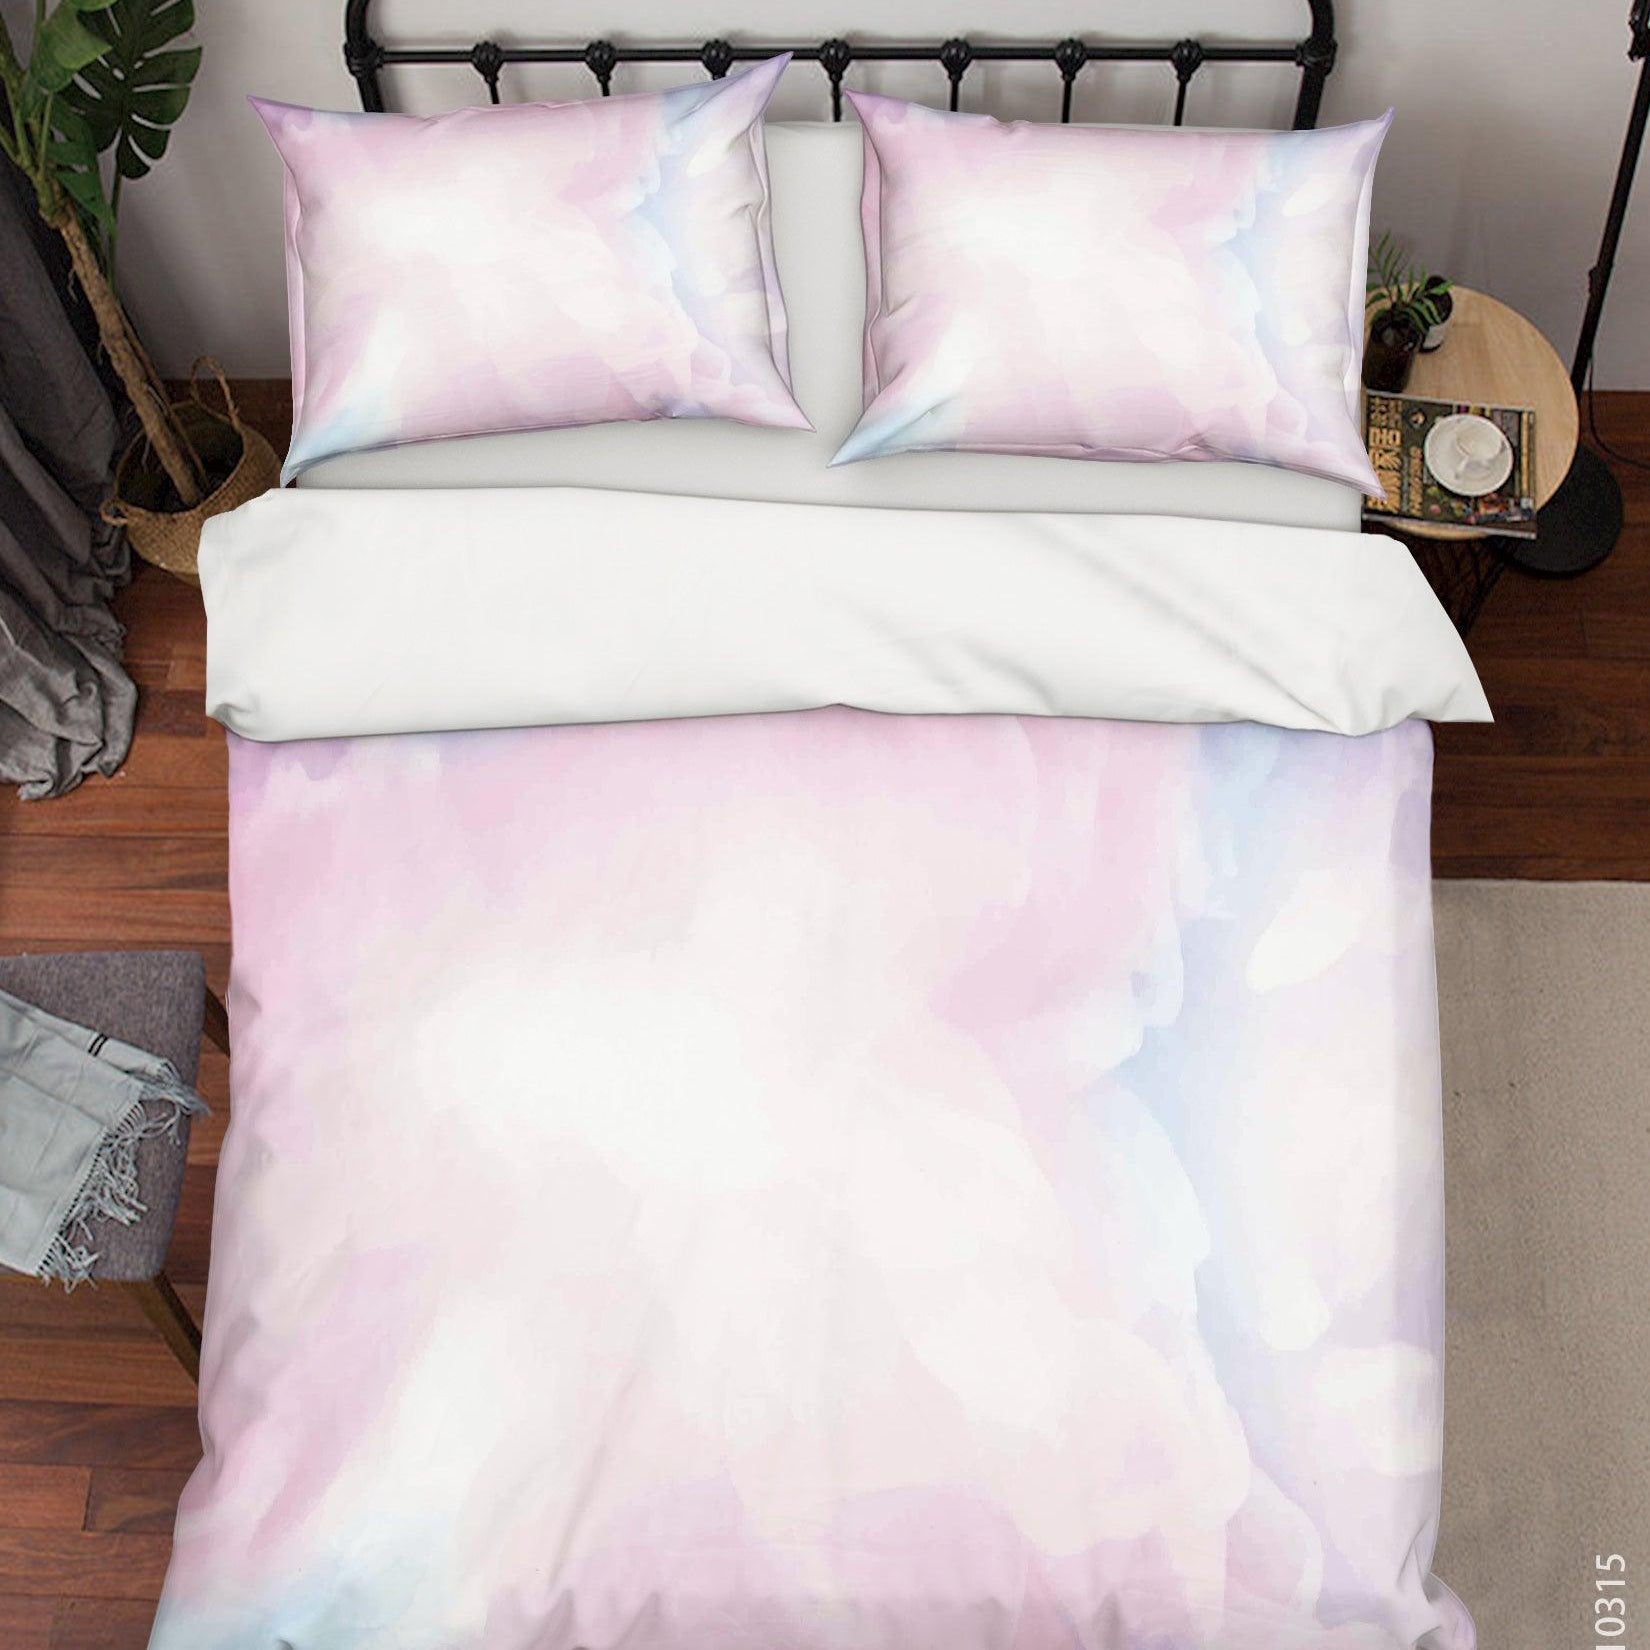 3D Watercolor Sky Quilt Cover Set Bedding Set Duvet Cover Pillowcases 58- Jess Art Decoration